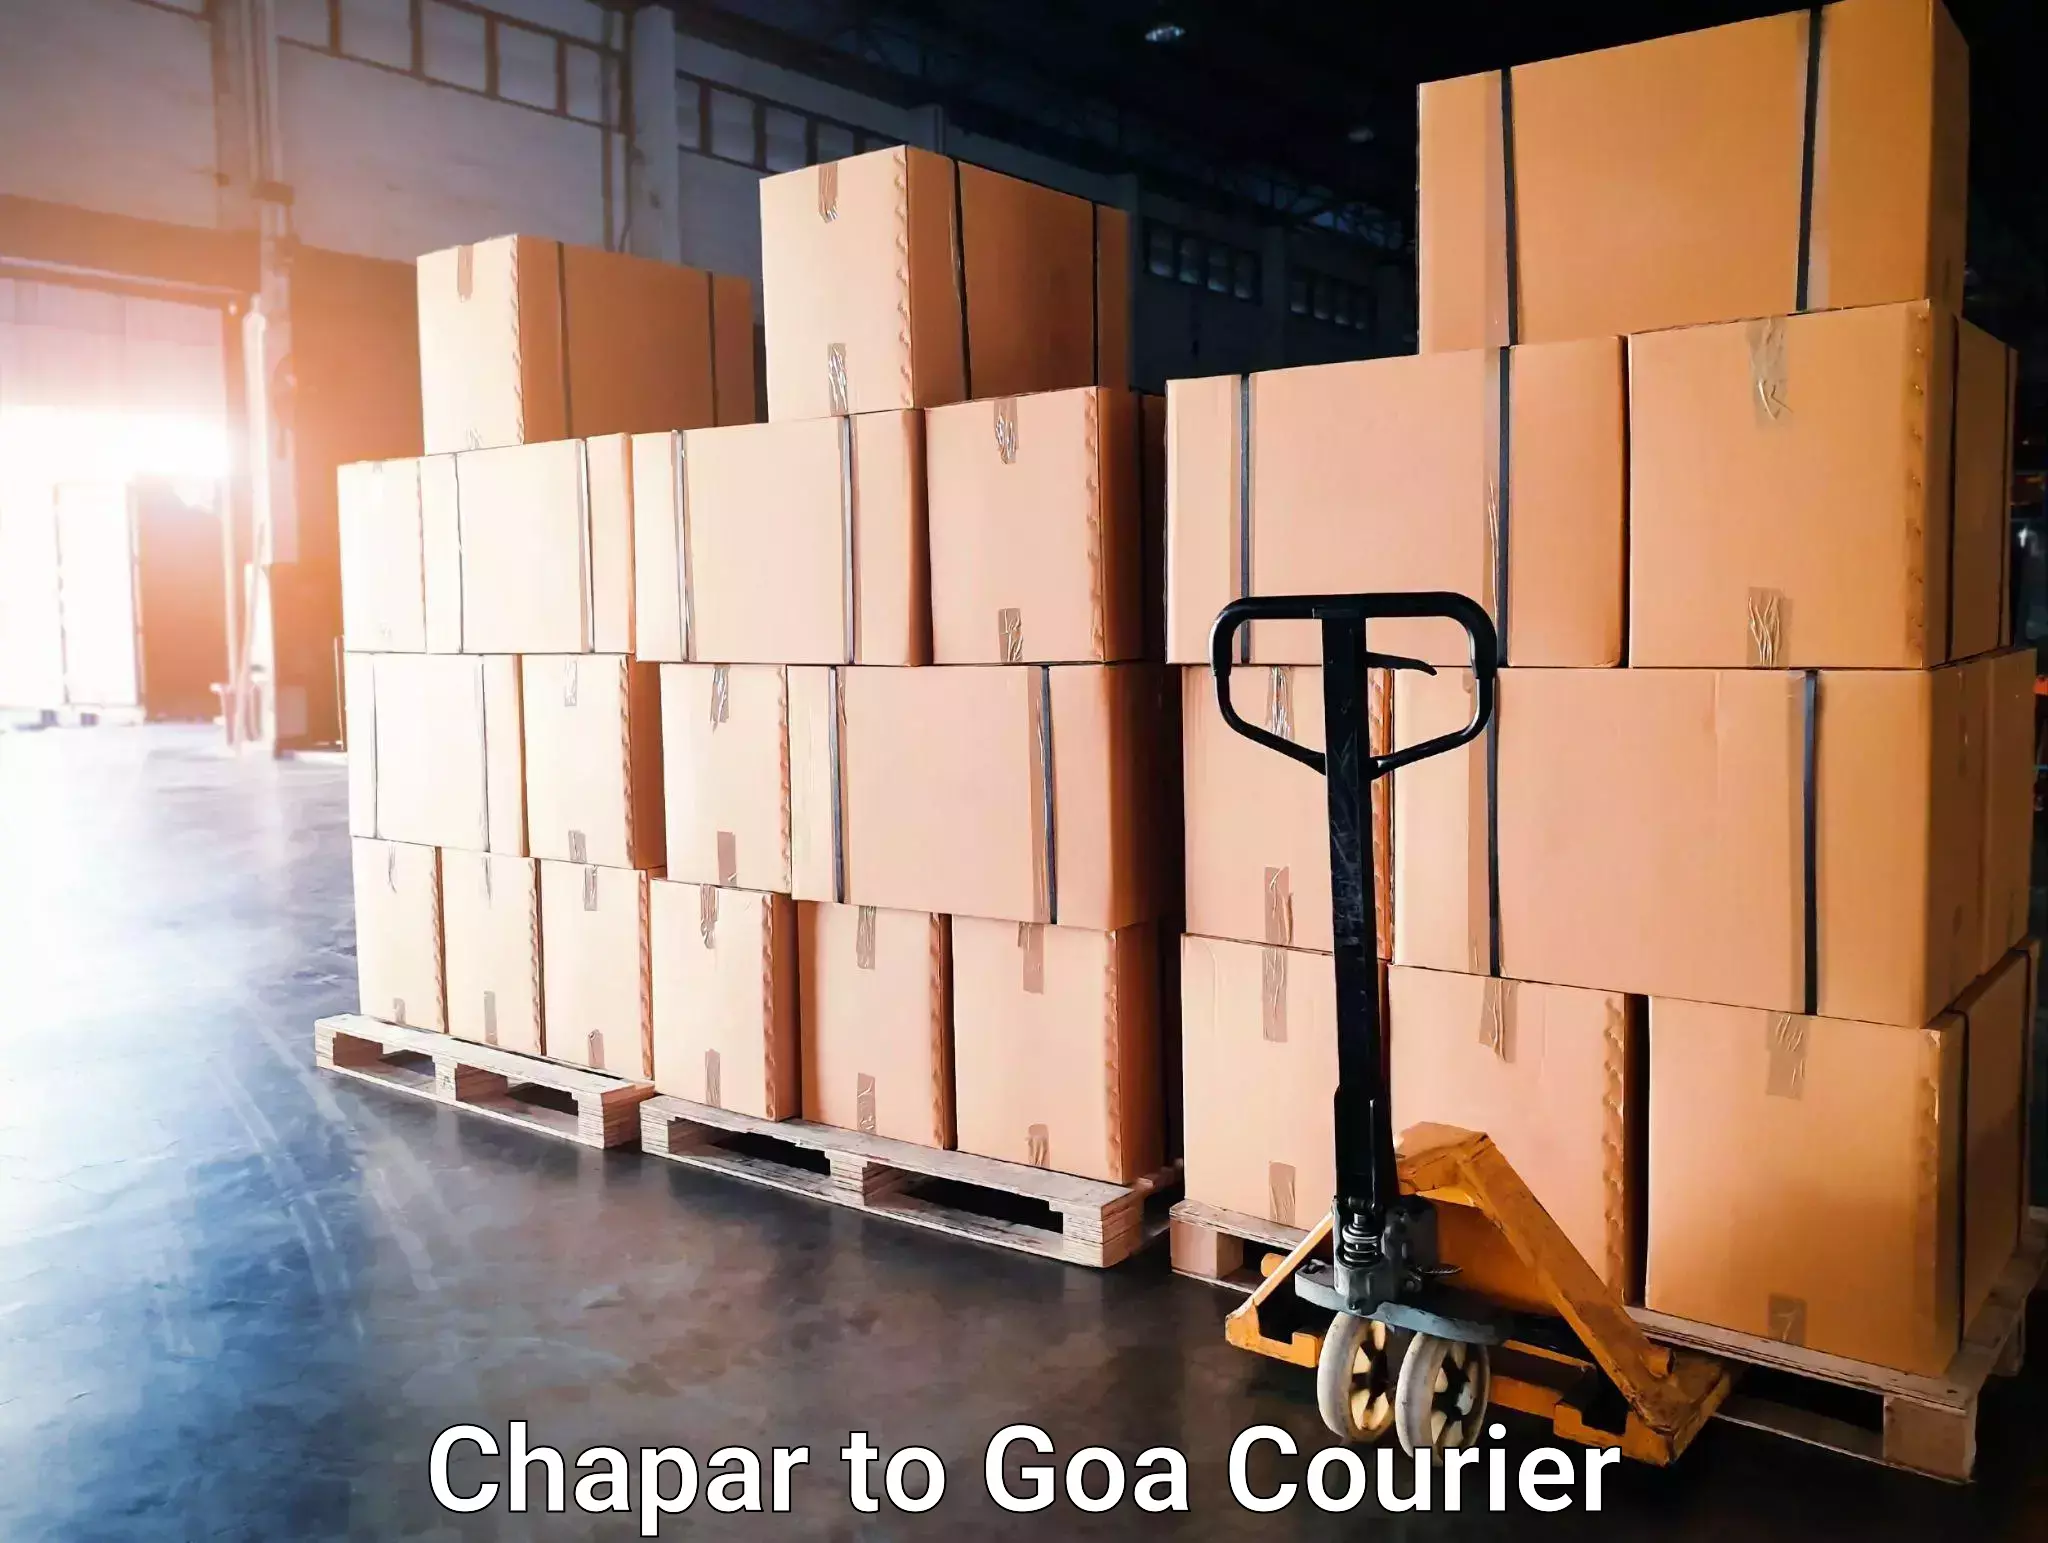 Courier app Chapar to Goa